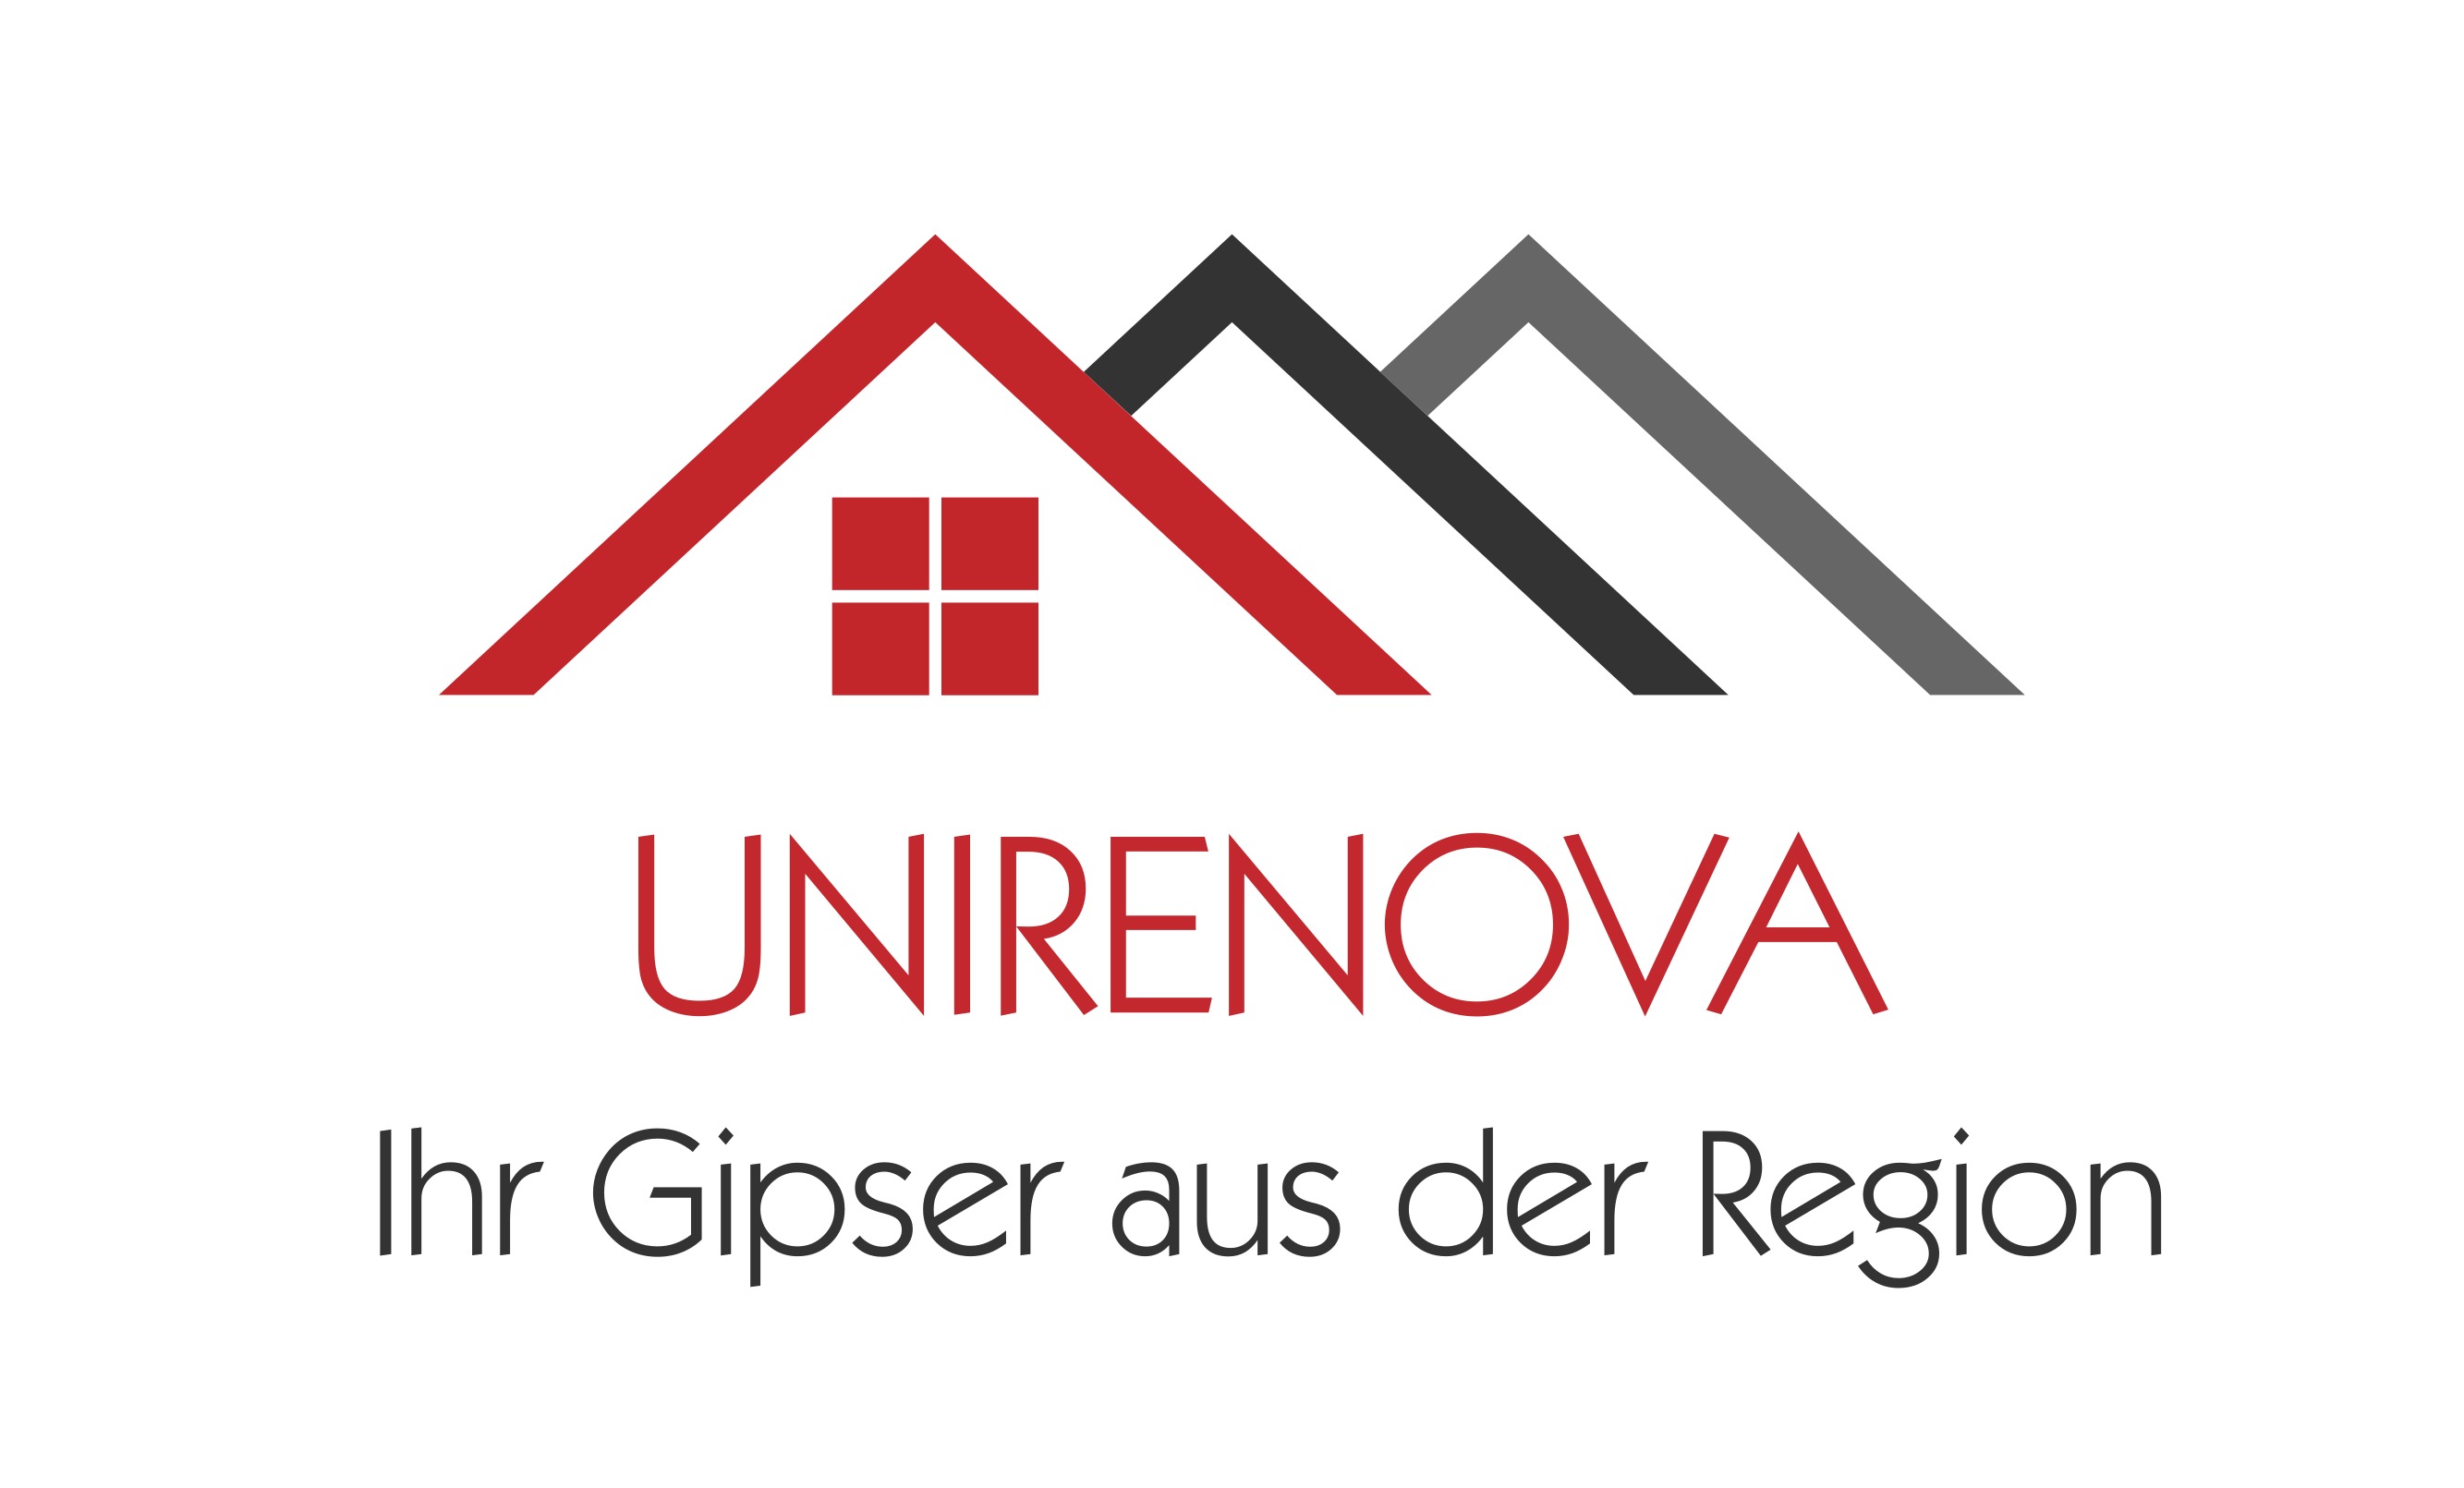 UNIRENOVA GmbH | Stationsstrasse 5 | 8105 Regensdorf